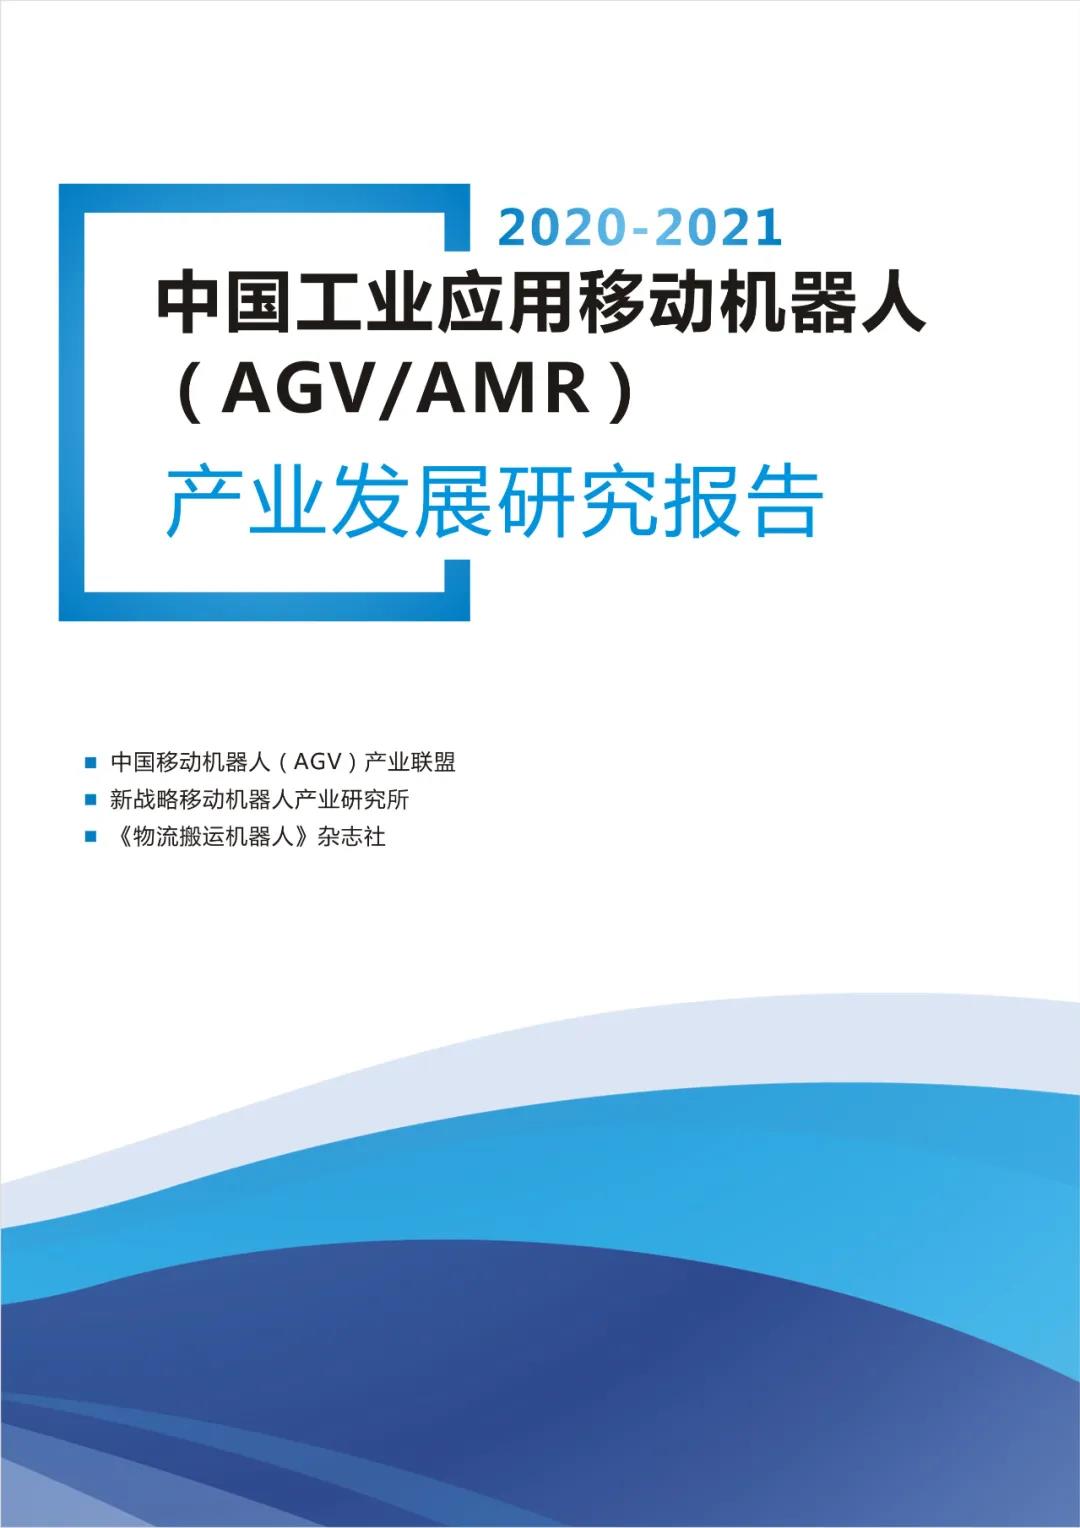 记住2020年度中国AGV/AMR的几个关键数字